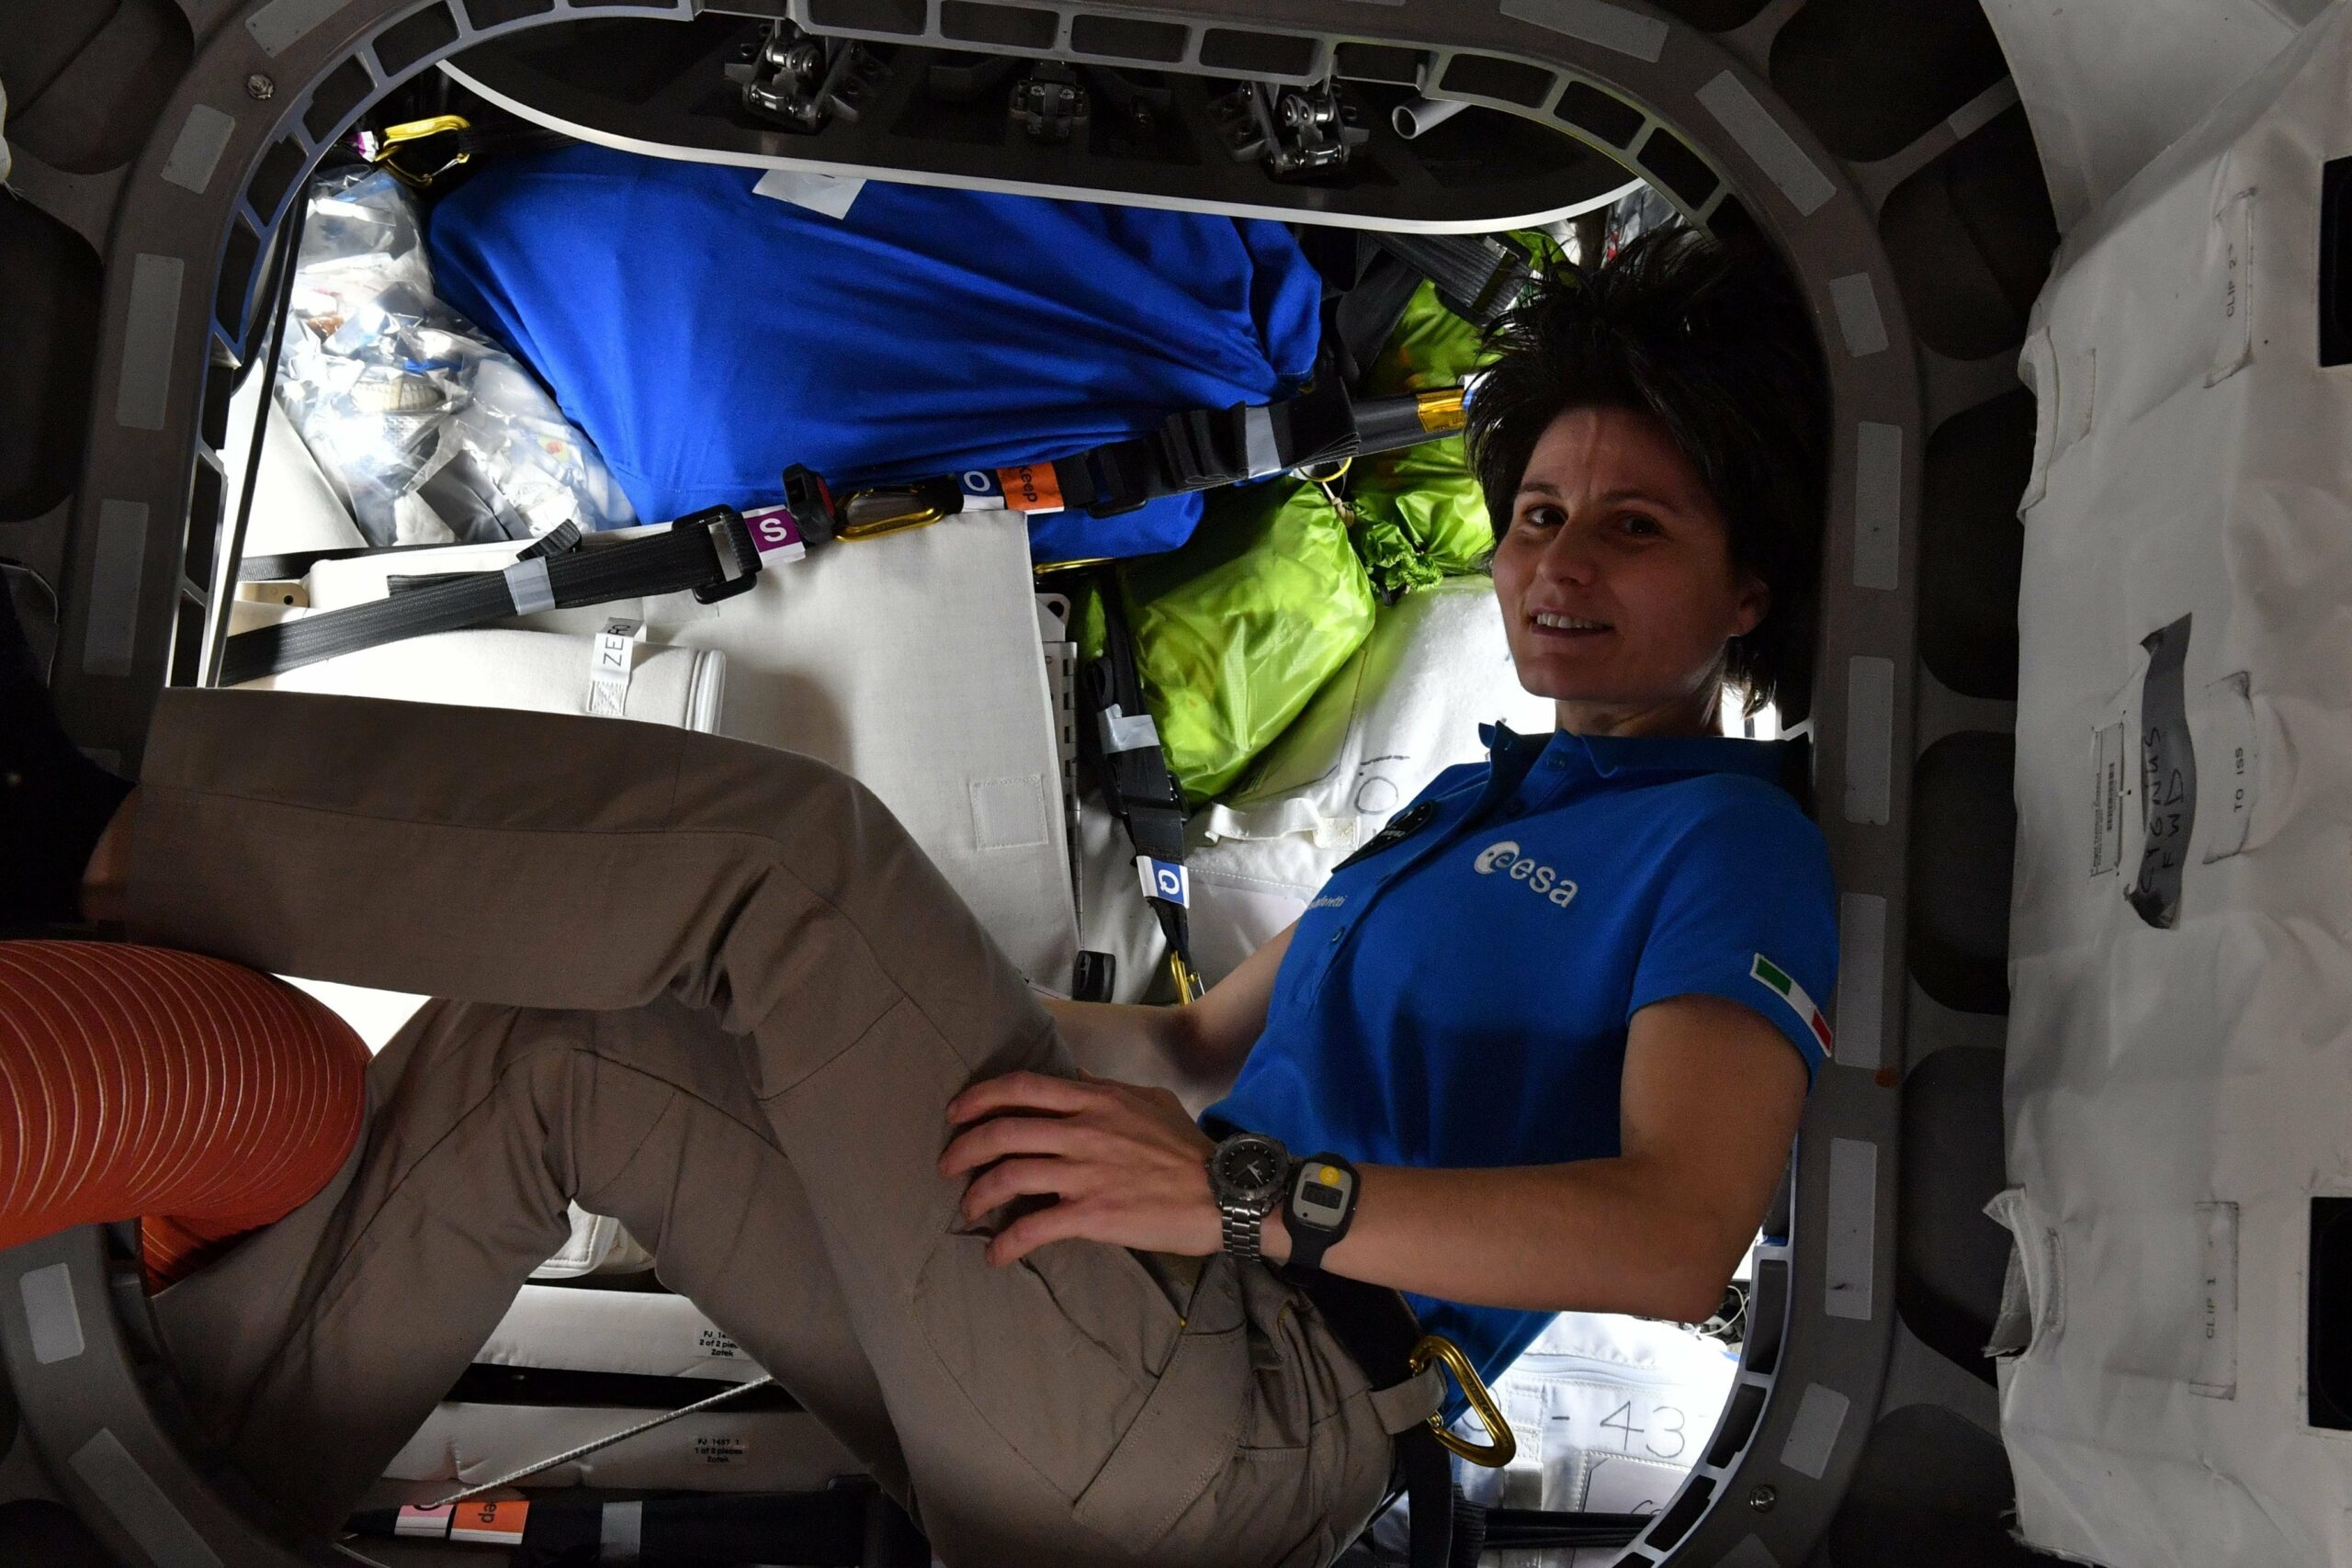 La astronauta de la Agencia Espacial Europea (ESA) Samantha Cristoforetti, realizando las labores de poner en órbita a diez nanosatélites e instalar los componentes de un brazo mecánico en la EEI. Foto: Humanspace flight.